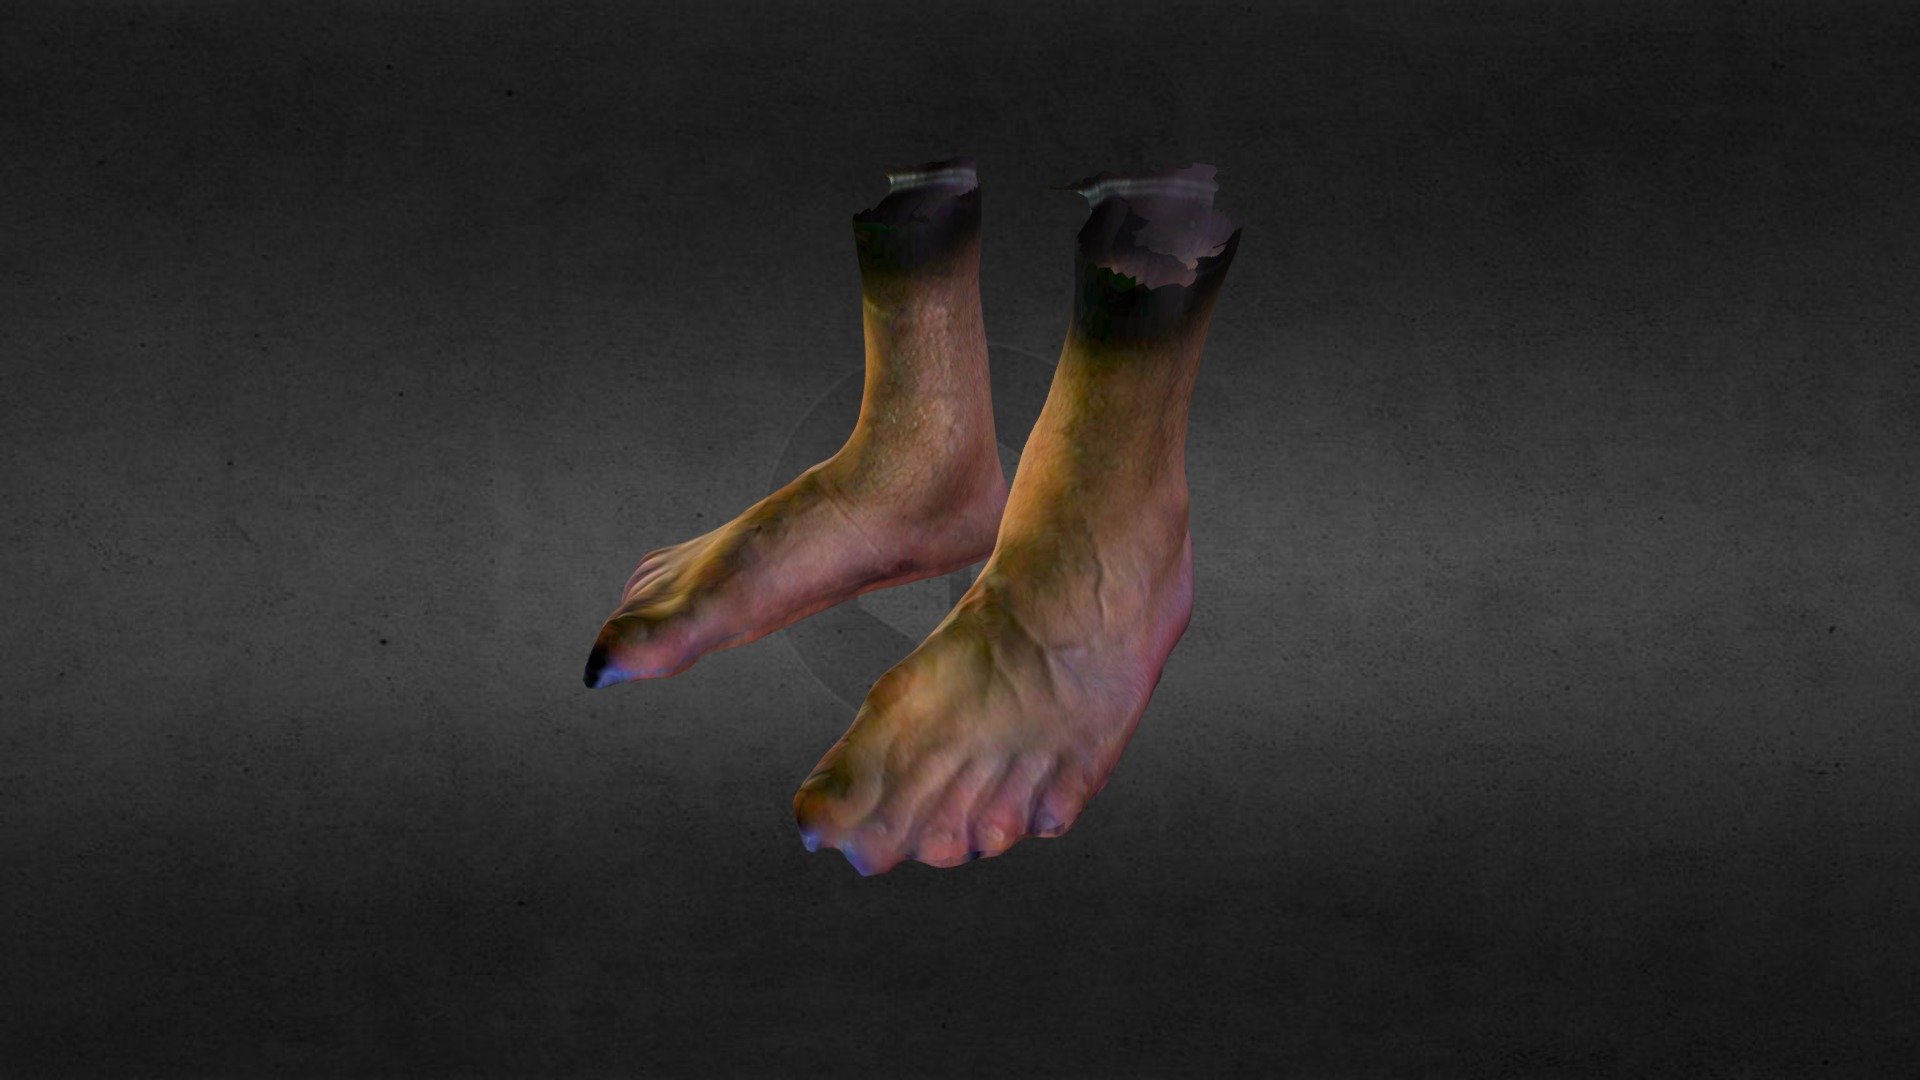 Sam foot. Foot 3d model. High quality 3d feet. Feet 3d model Test.